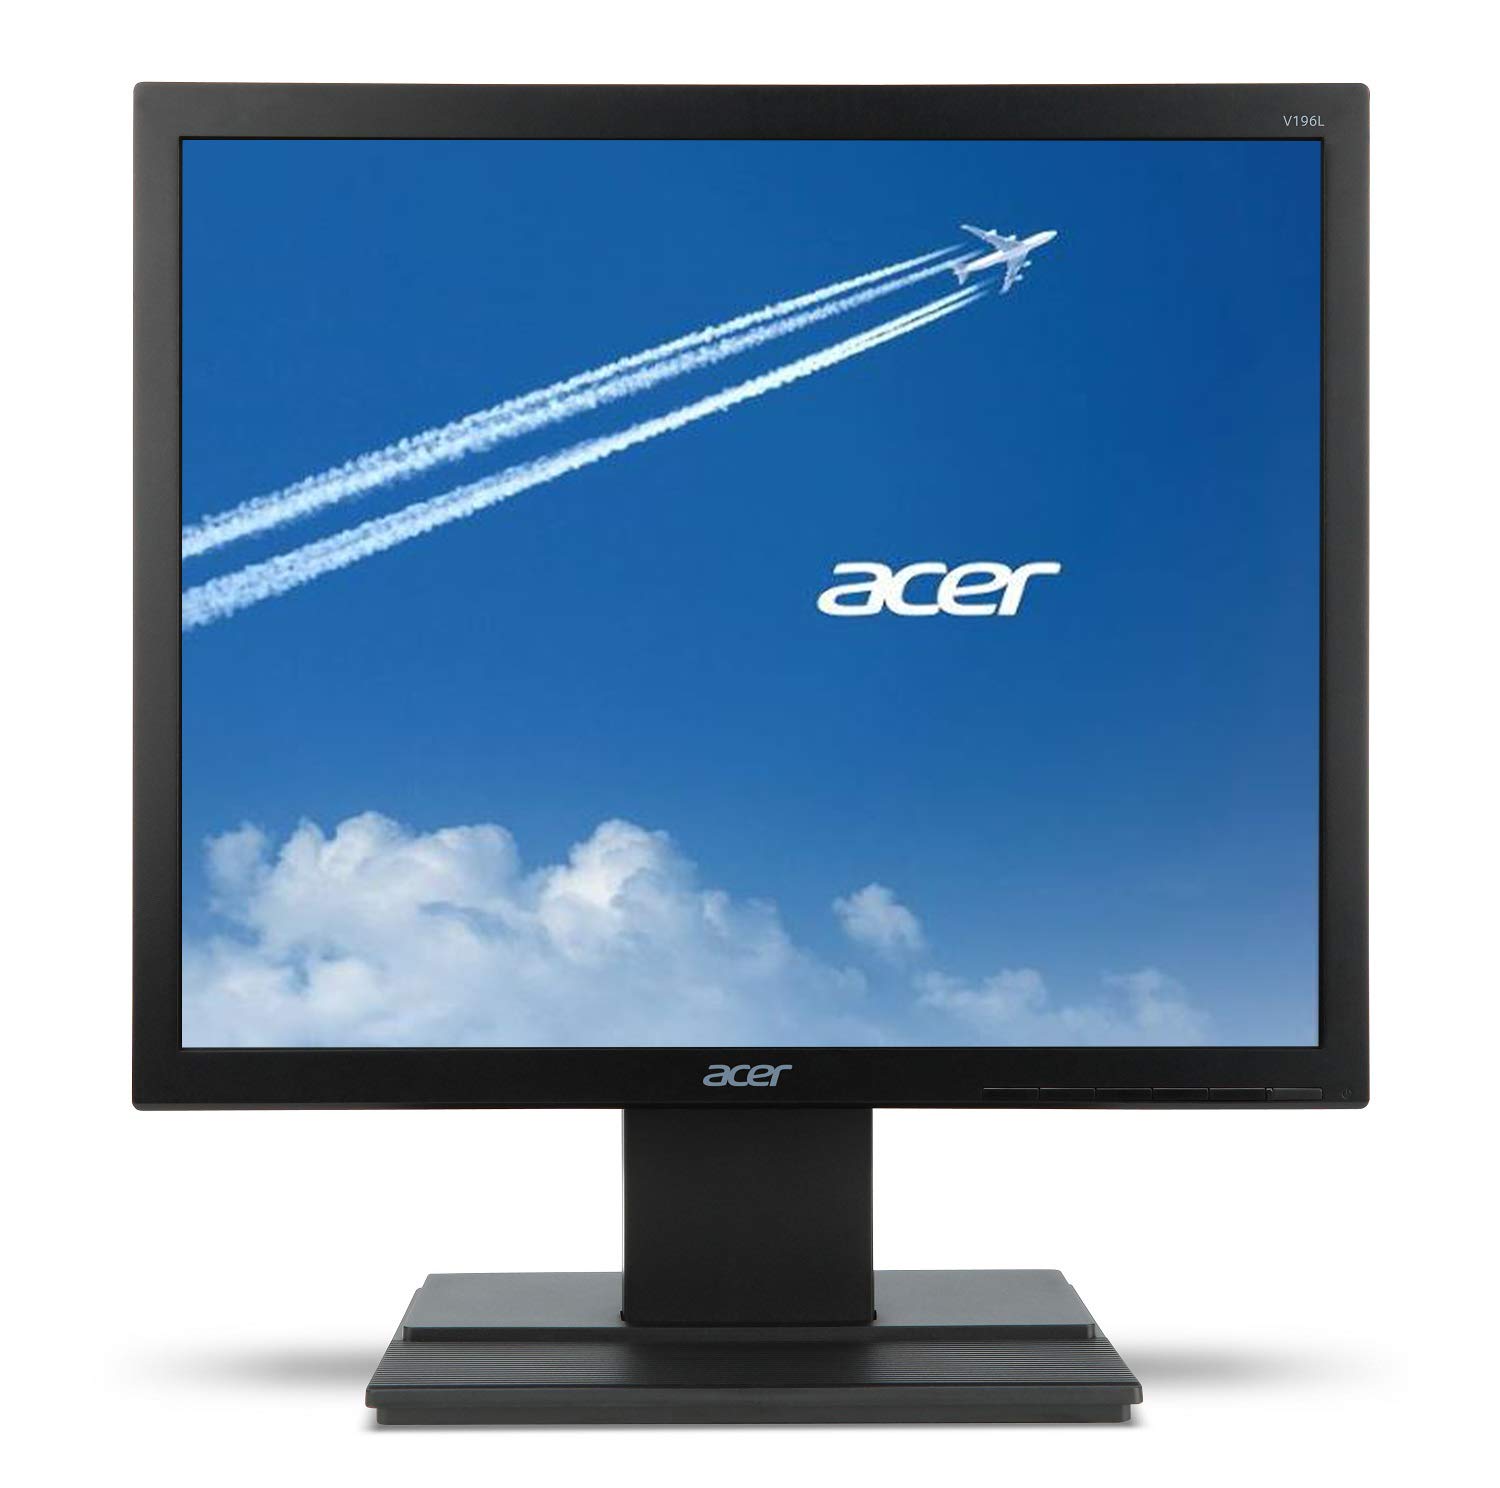 Acer Monitor V196L Bb 19' HD (1280 x 1024) IPS (puerto VGA)